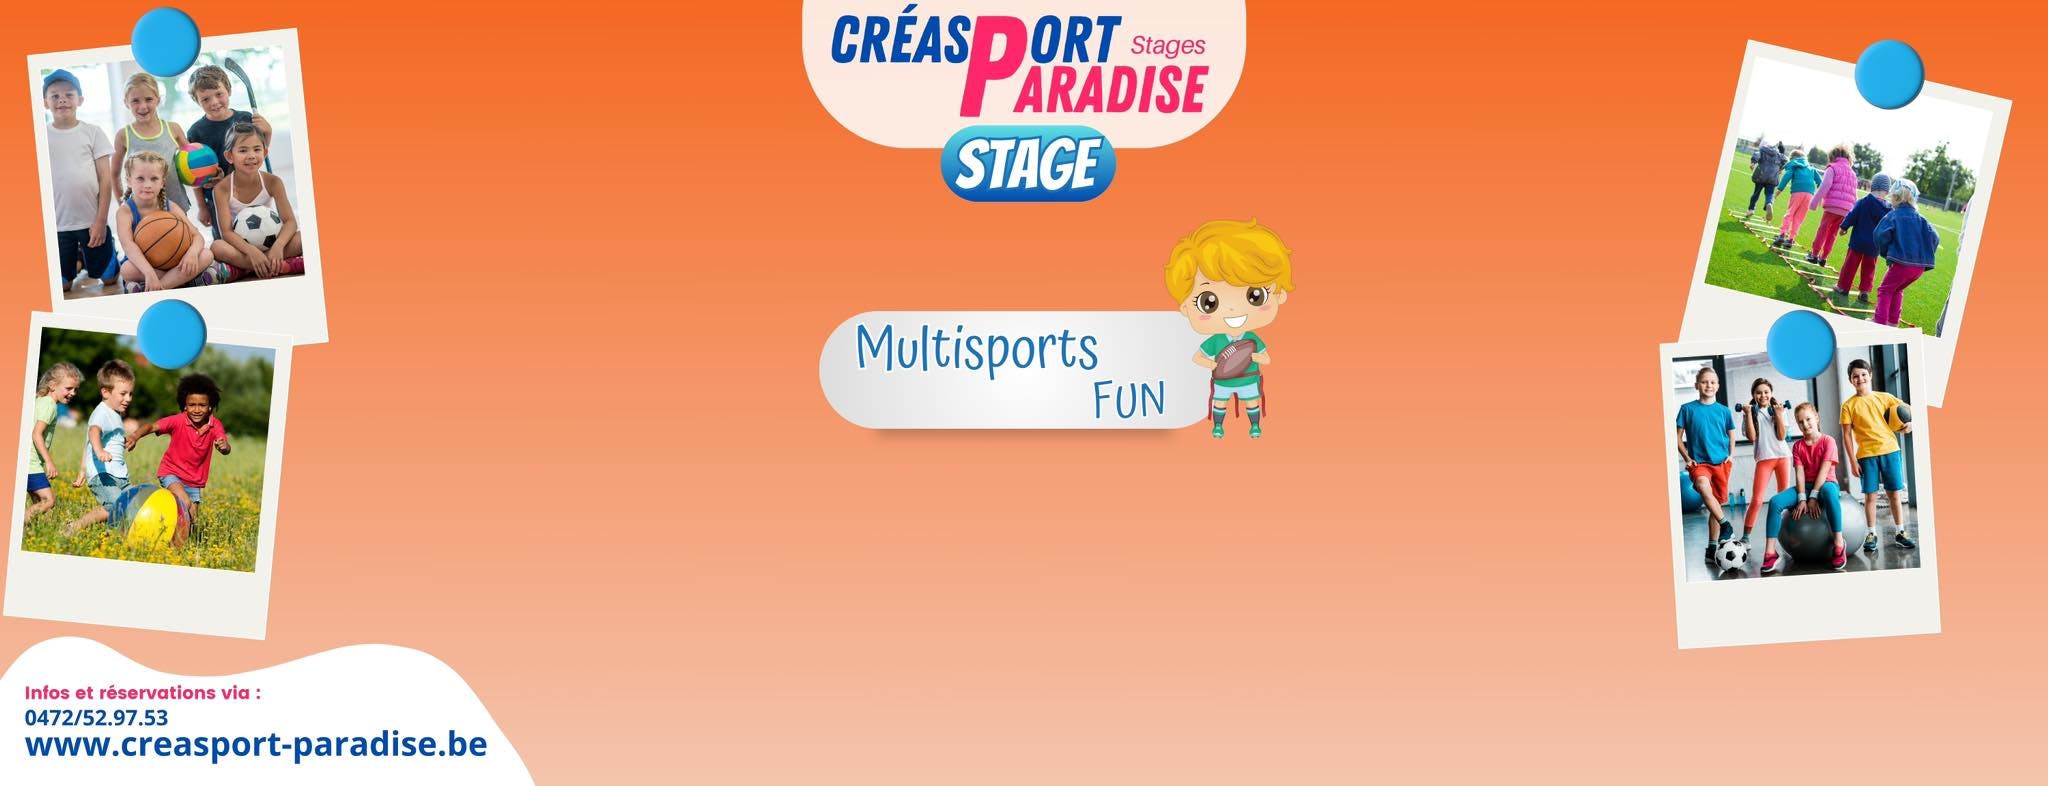 Multisports - Fun